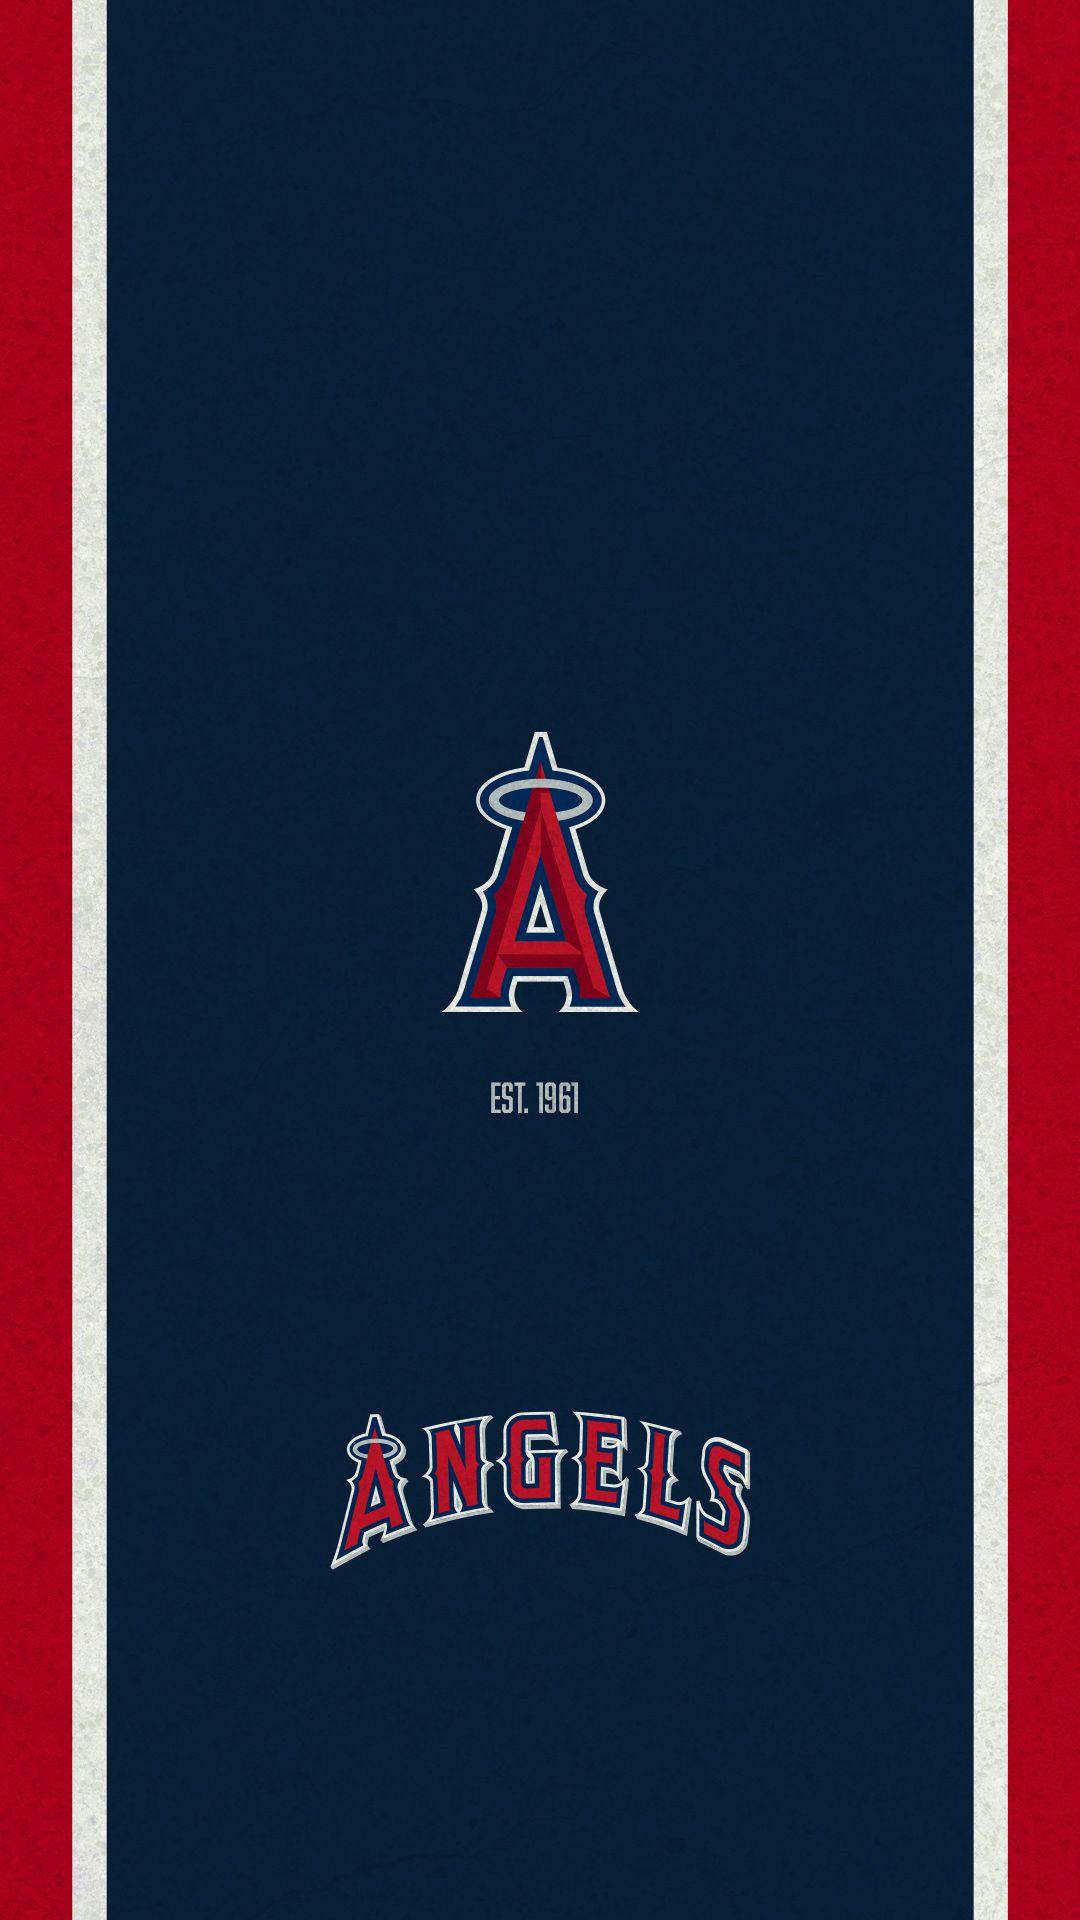 Los Angeles Angels iPhone Wallpapers - Top Free Los Angeles Angels